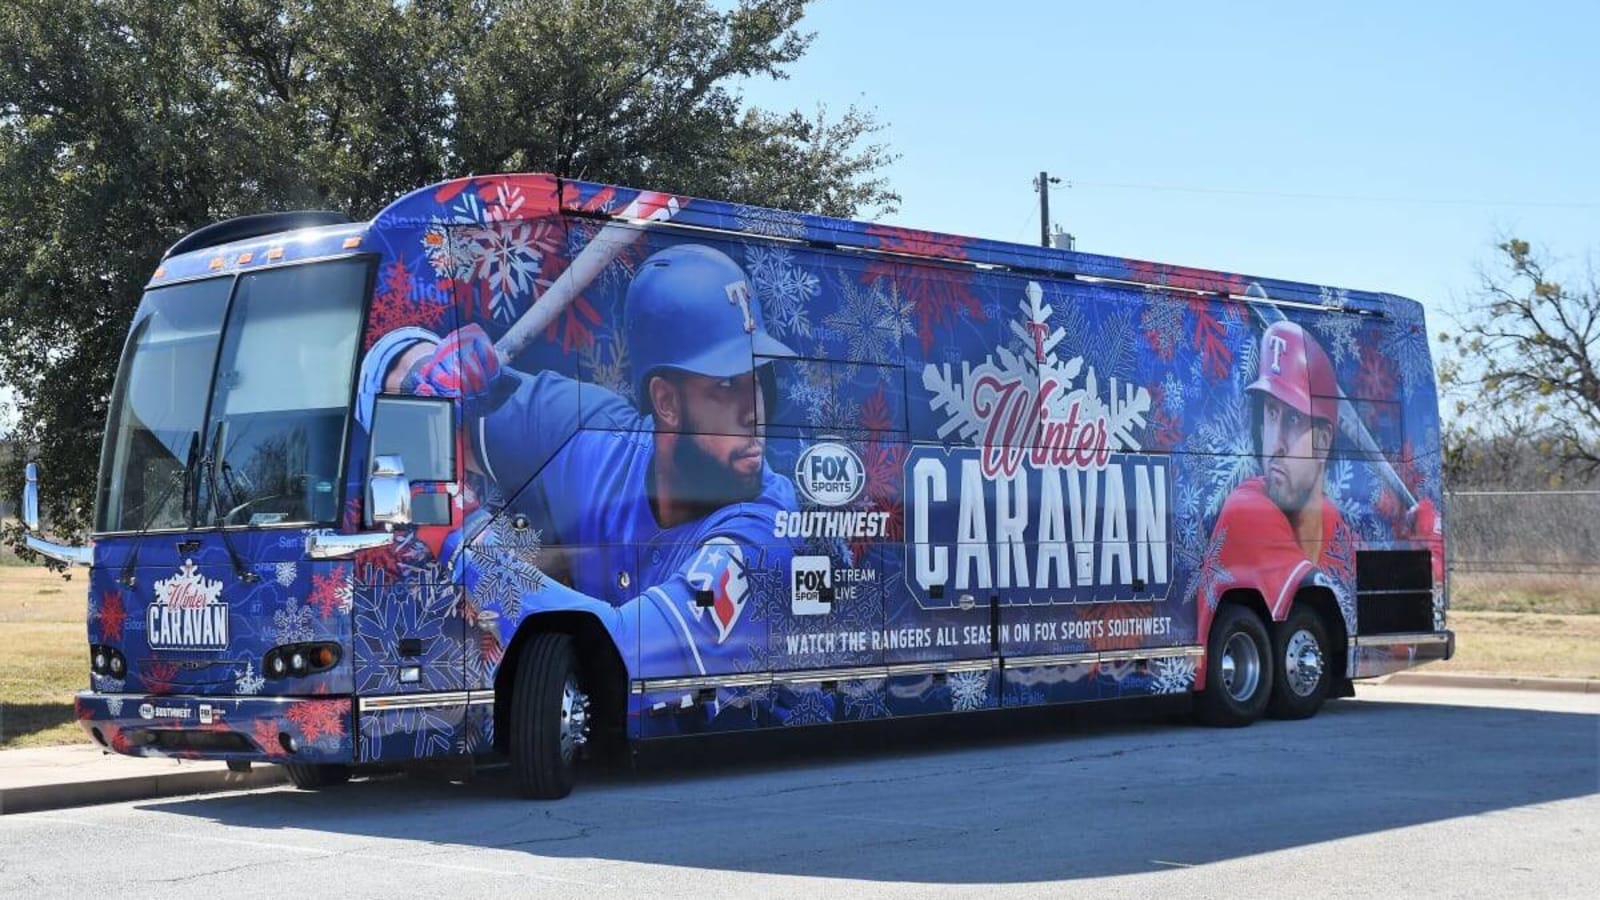 Texas Rangers Winter Caravan Schedule, Information